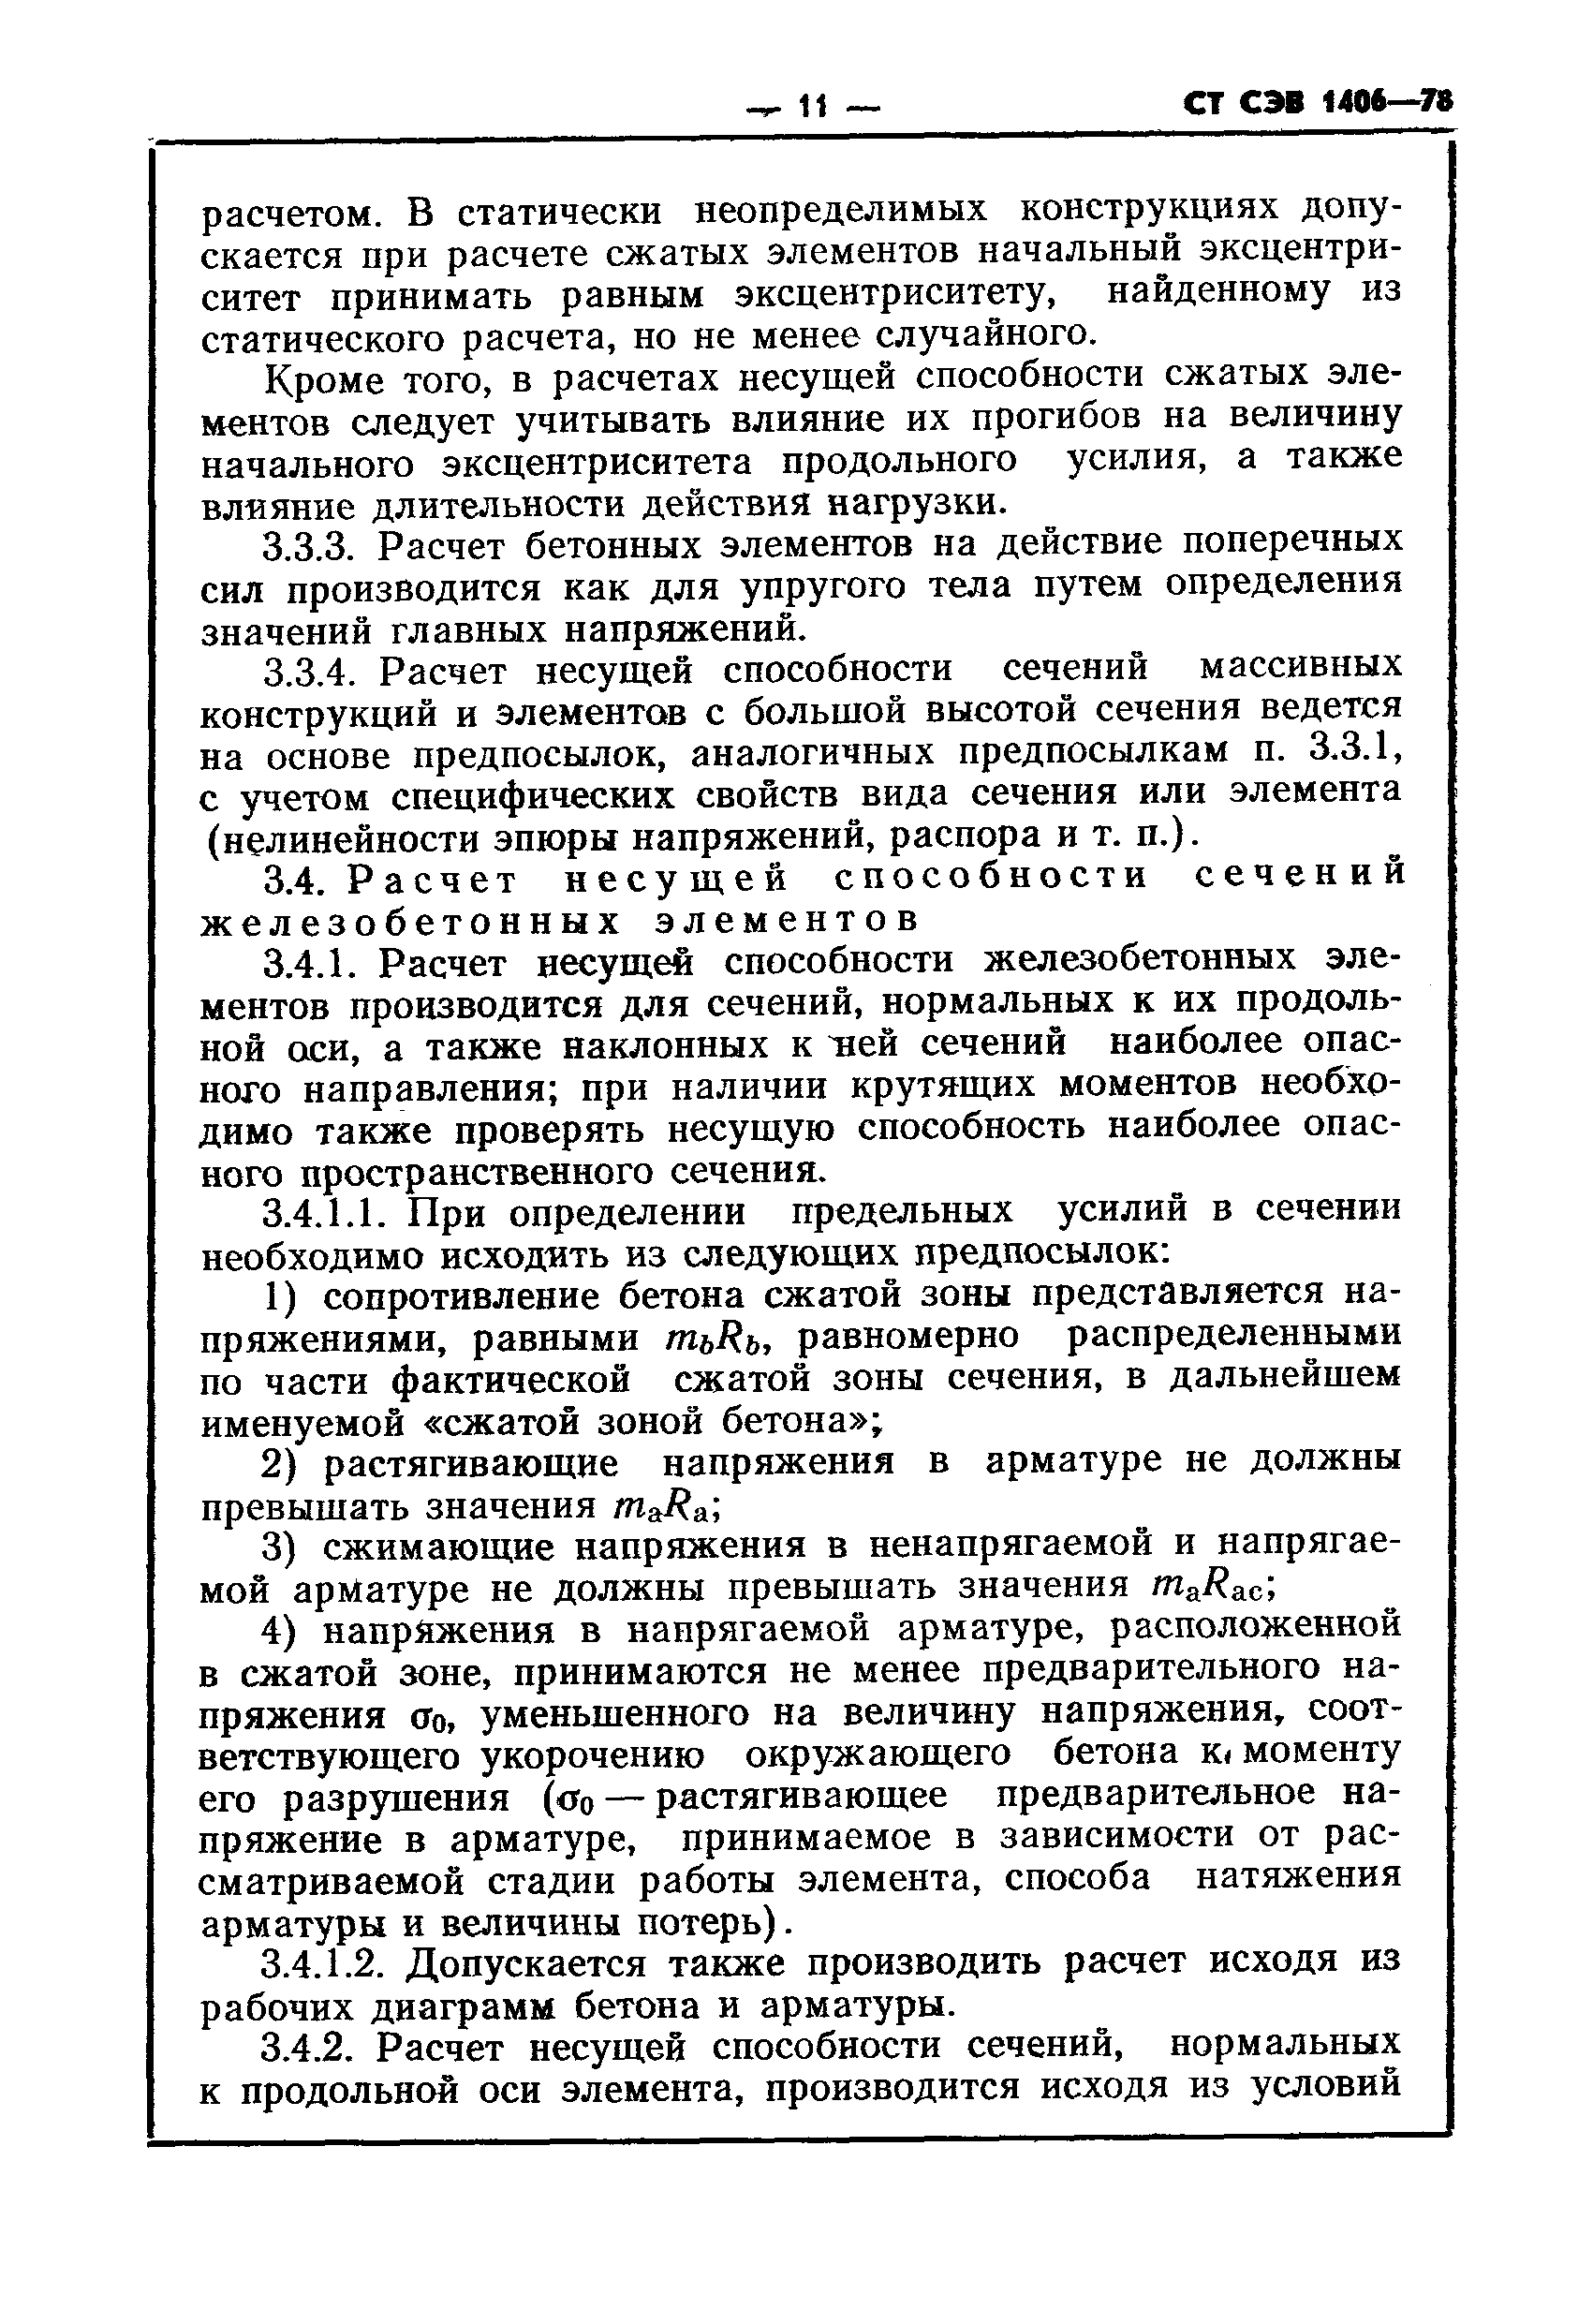 СТ СЭВ 1406-78